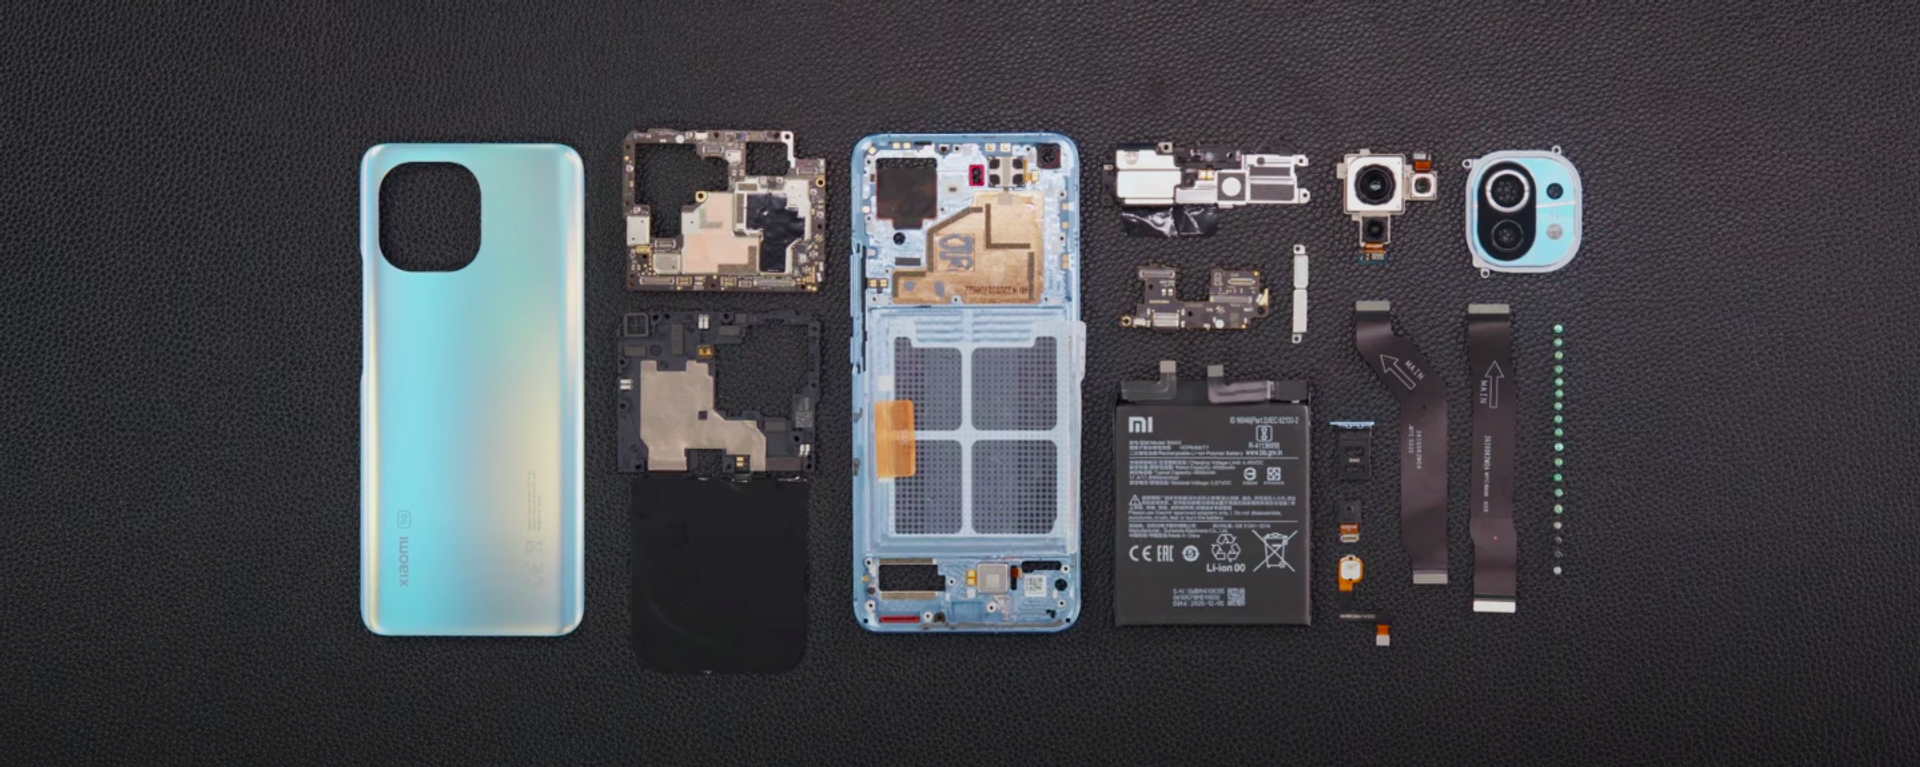 Las piezas que componen el móvil Xiaomi Mi 11 - Sputnik Mundo, 1920, 12.02.2021